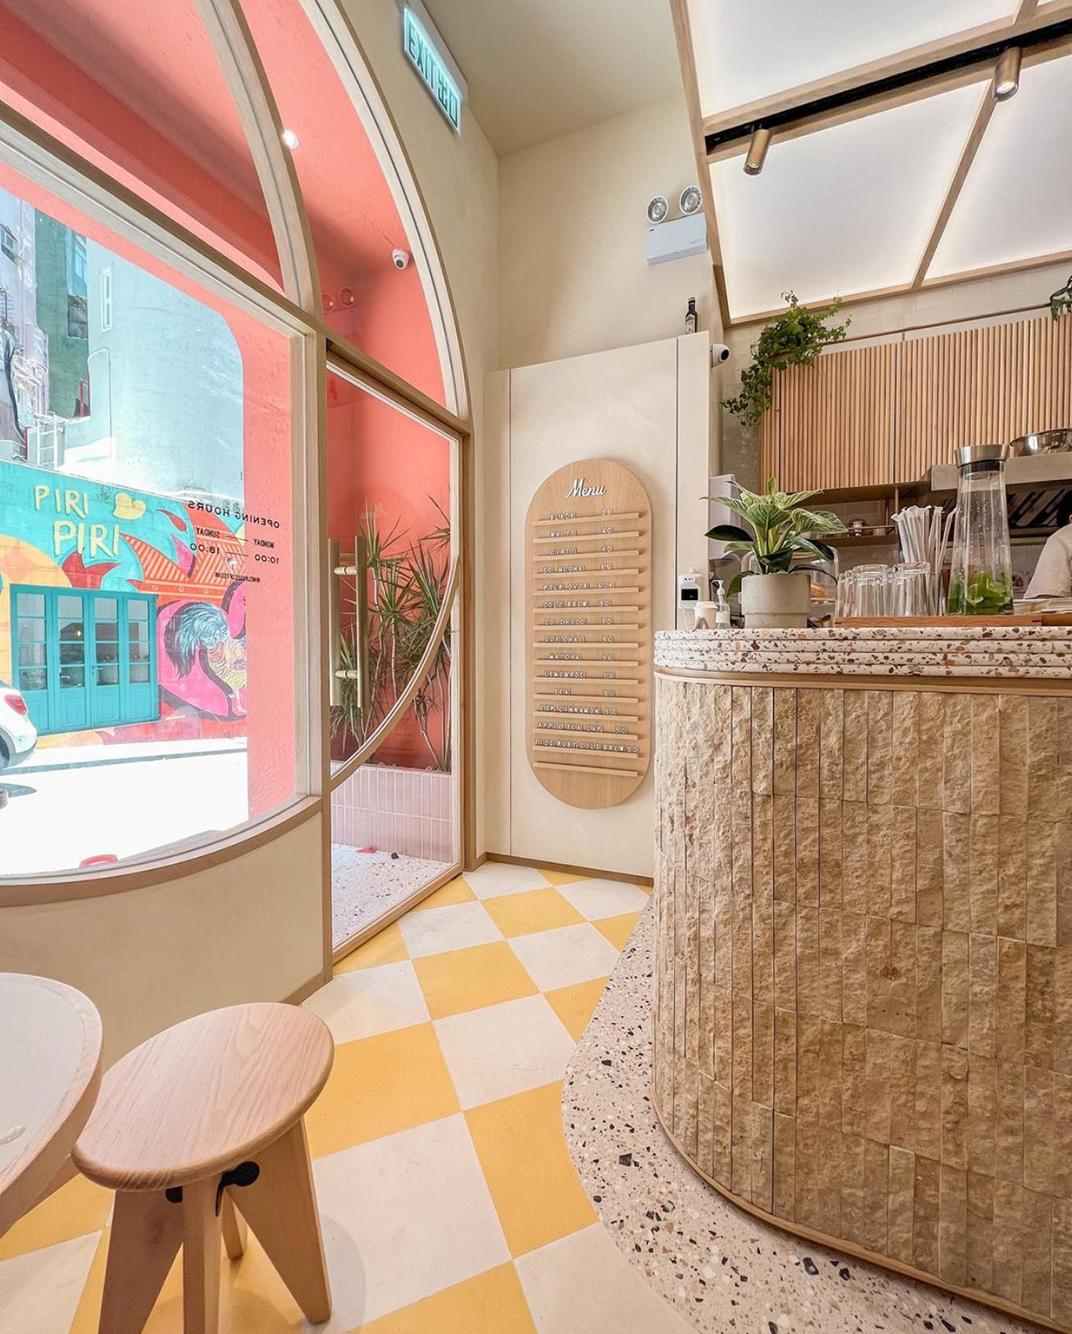 简餐餐厅Melrose Coffee 香港 中环 咖啡店 简餐 粉色 水磨石 石材 logo设计 vi设计 空间设计